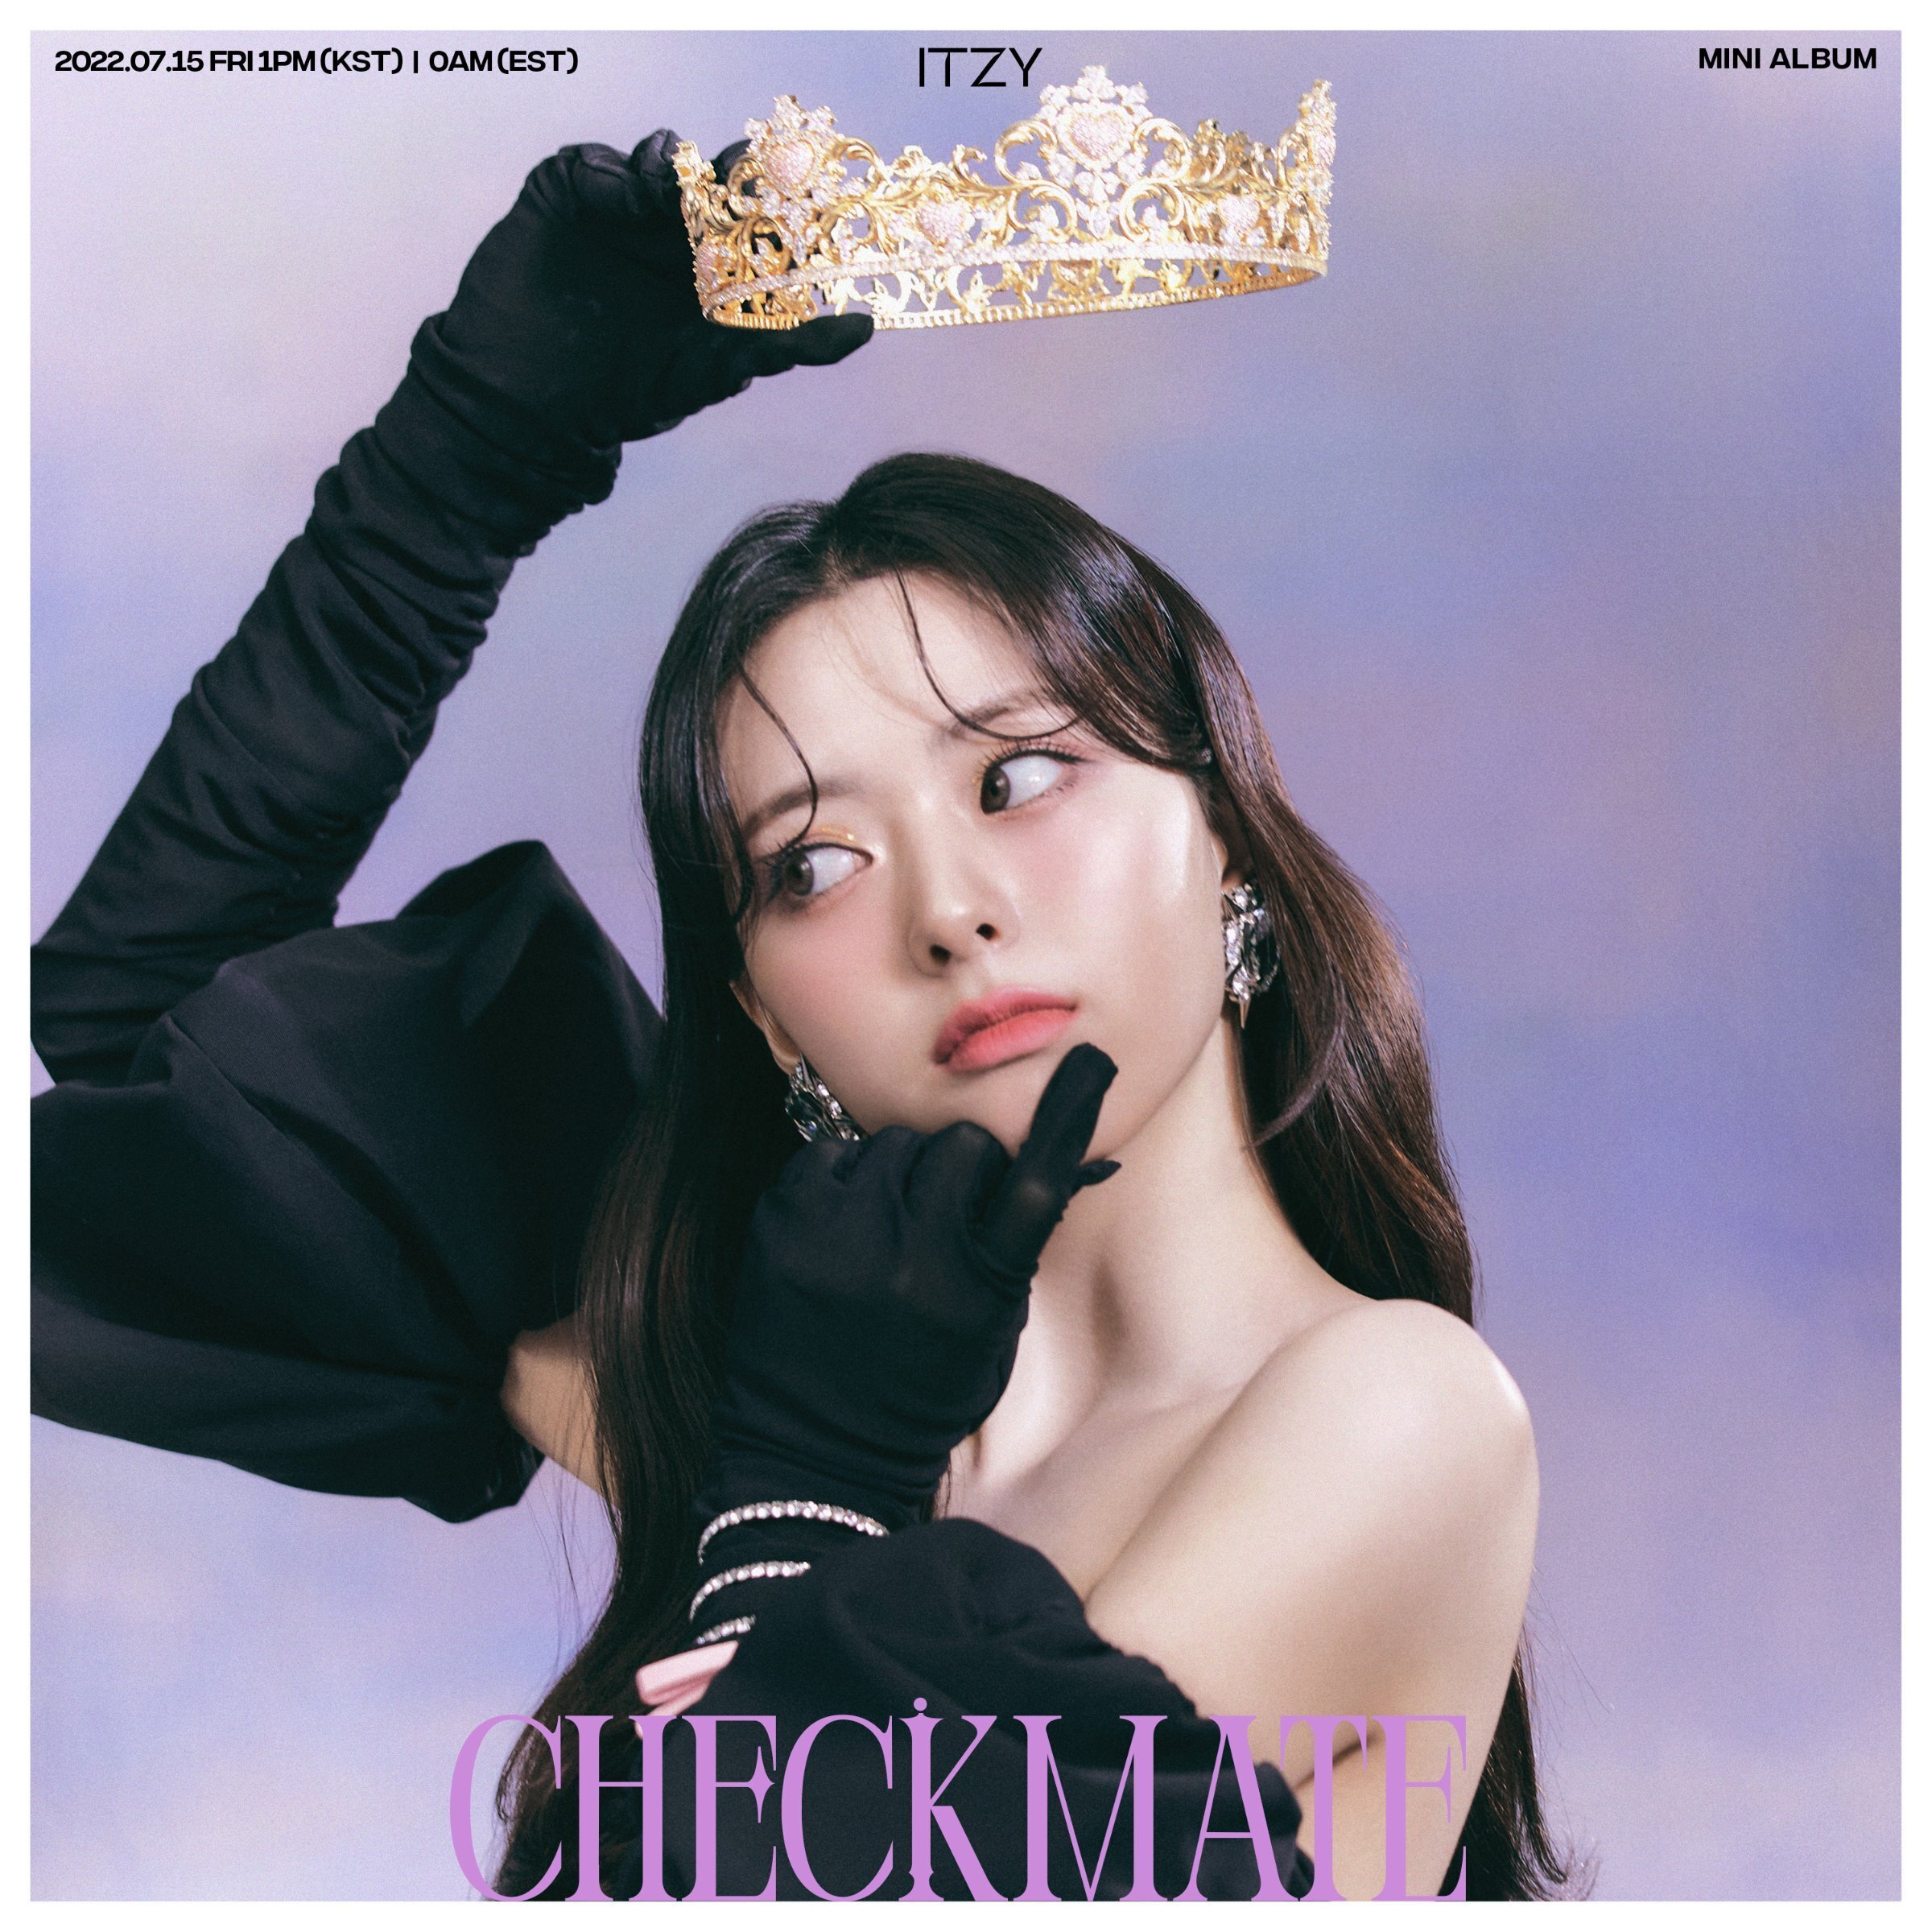 ITZY - The 5th Mini Album: CHECKMATE (Concept Photo #1) : r/kpop